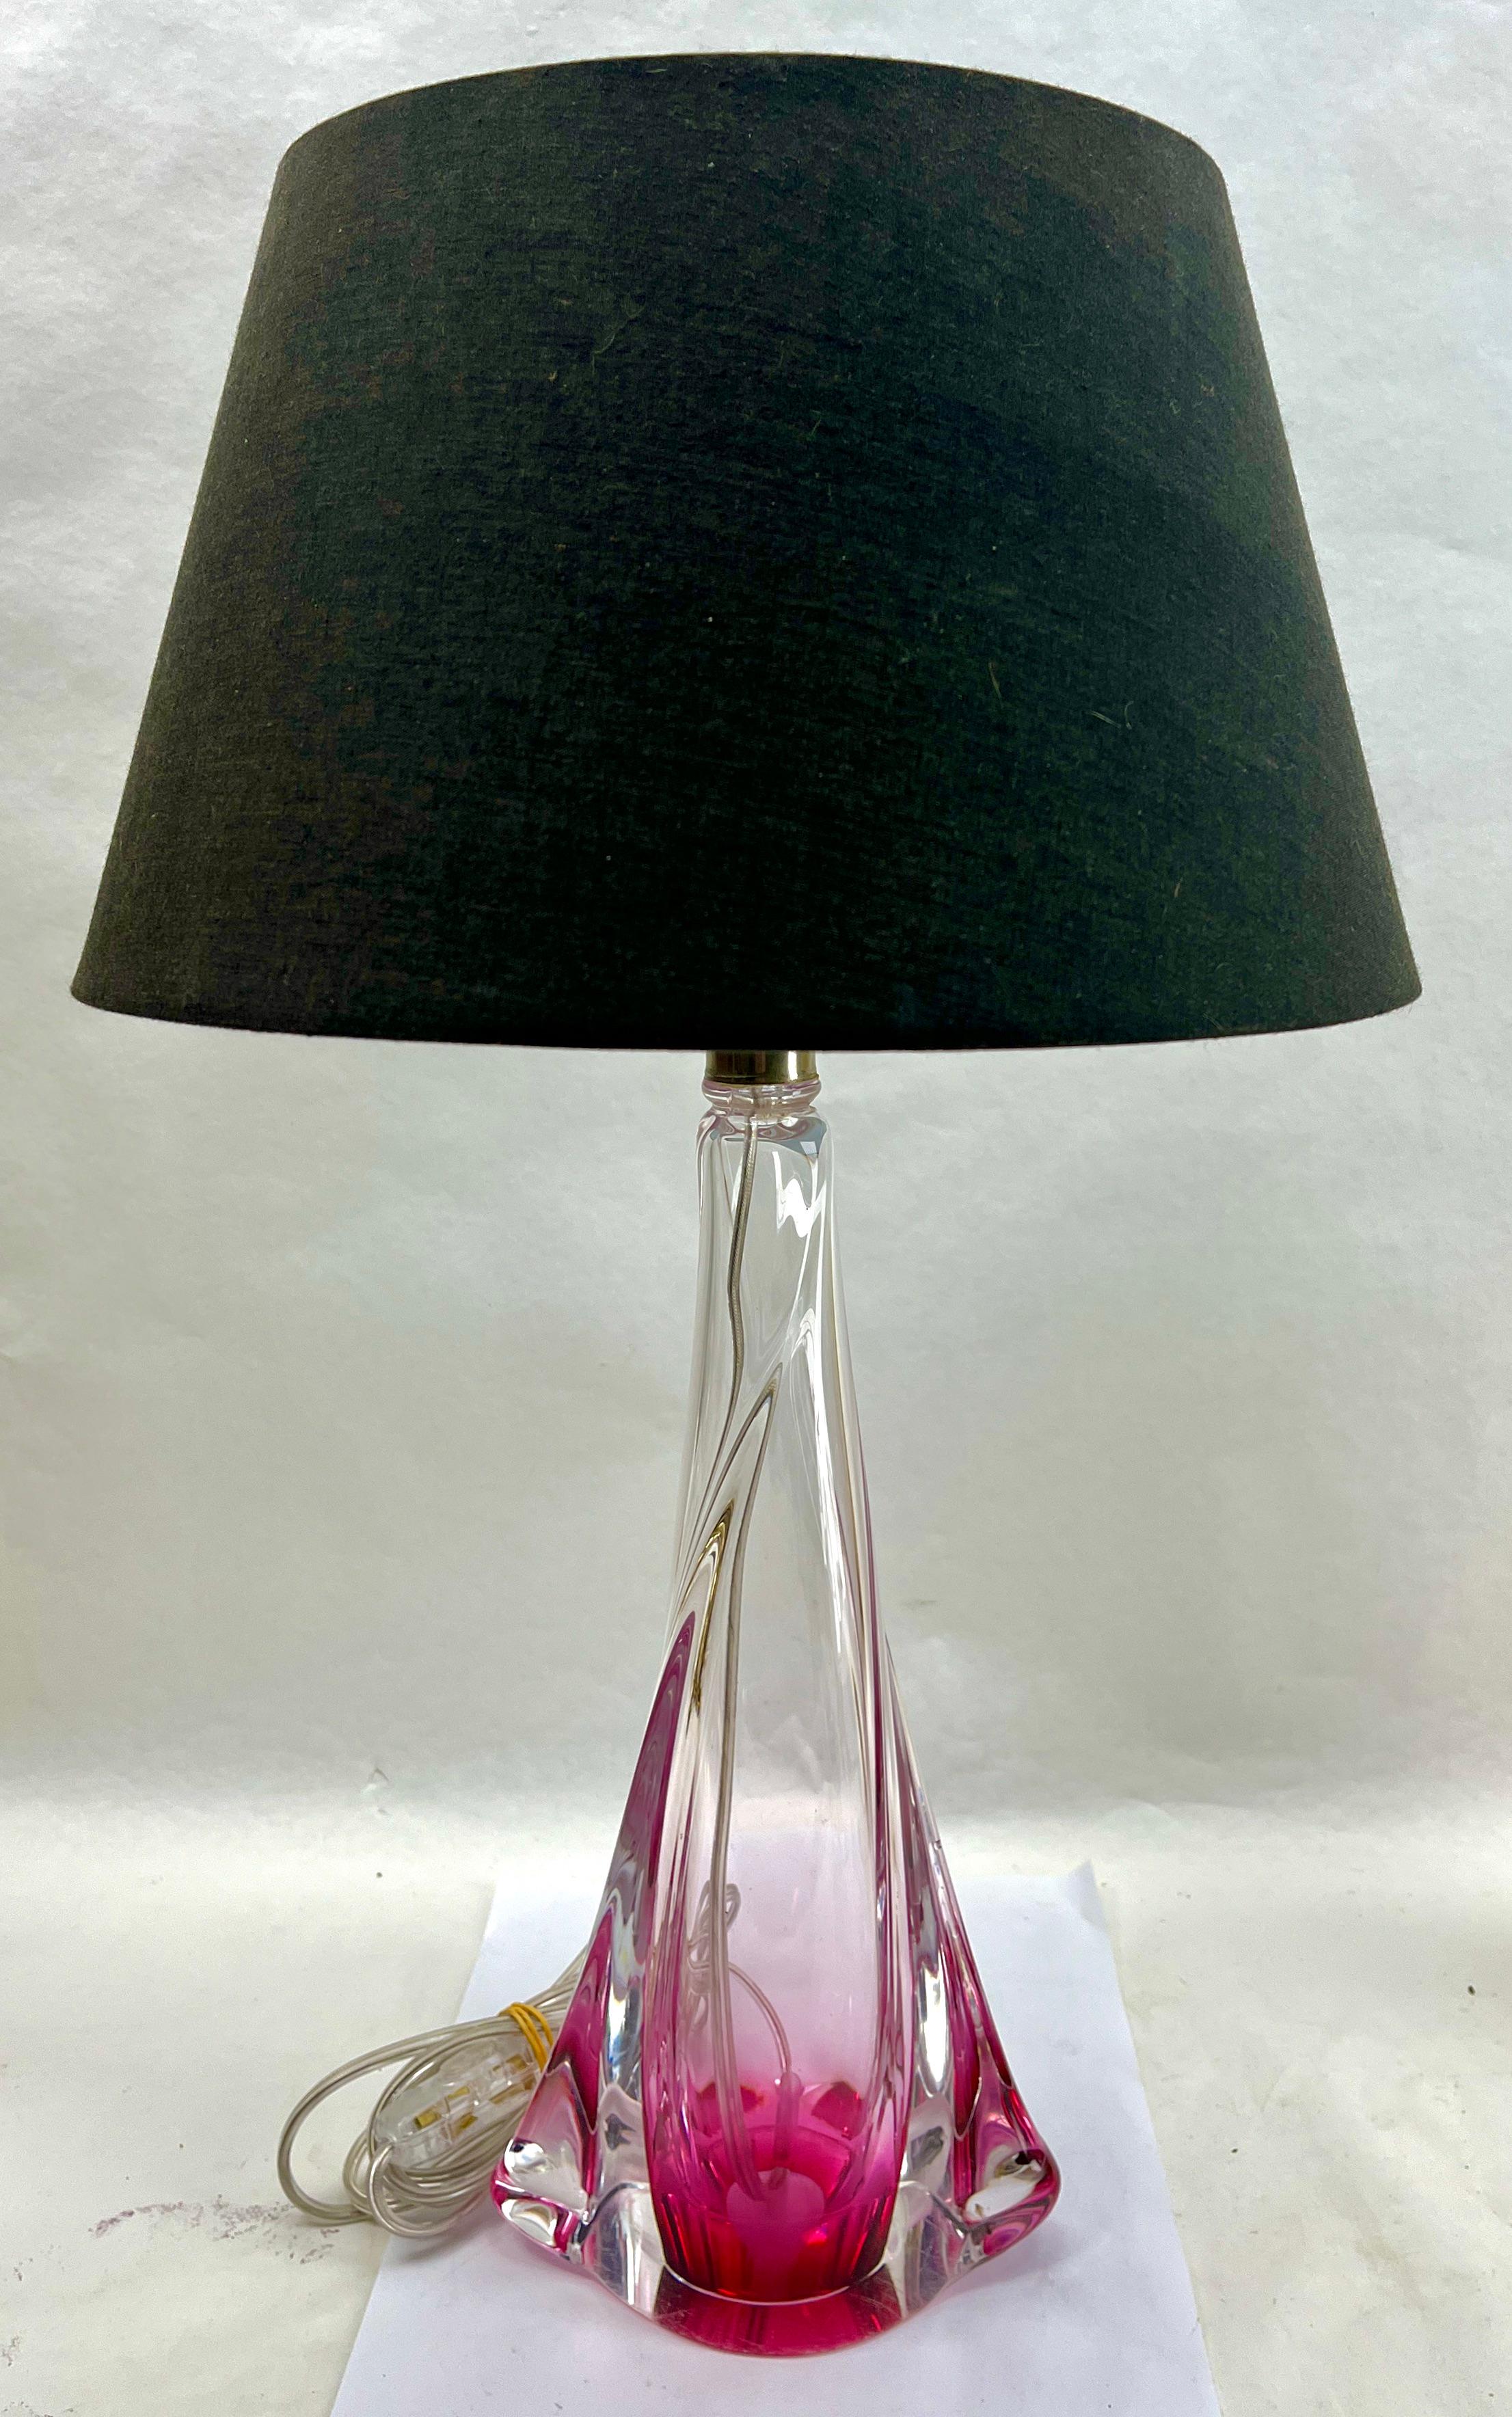 Cette lampe de table simple et gracieuse a une taille de 39 cm sans l'abat-jour.
Le noyau coloré, dans la teinte classique du Val Saint Lambert, a été doté d'un épais Sommerso (enveloppe de cristal clair) afin que l'objet paraisse délicat tout en